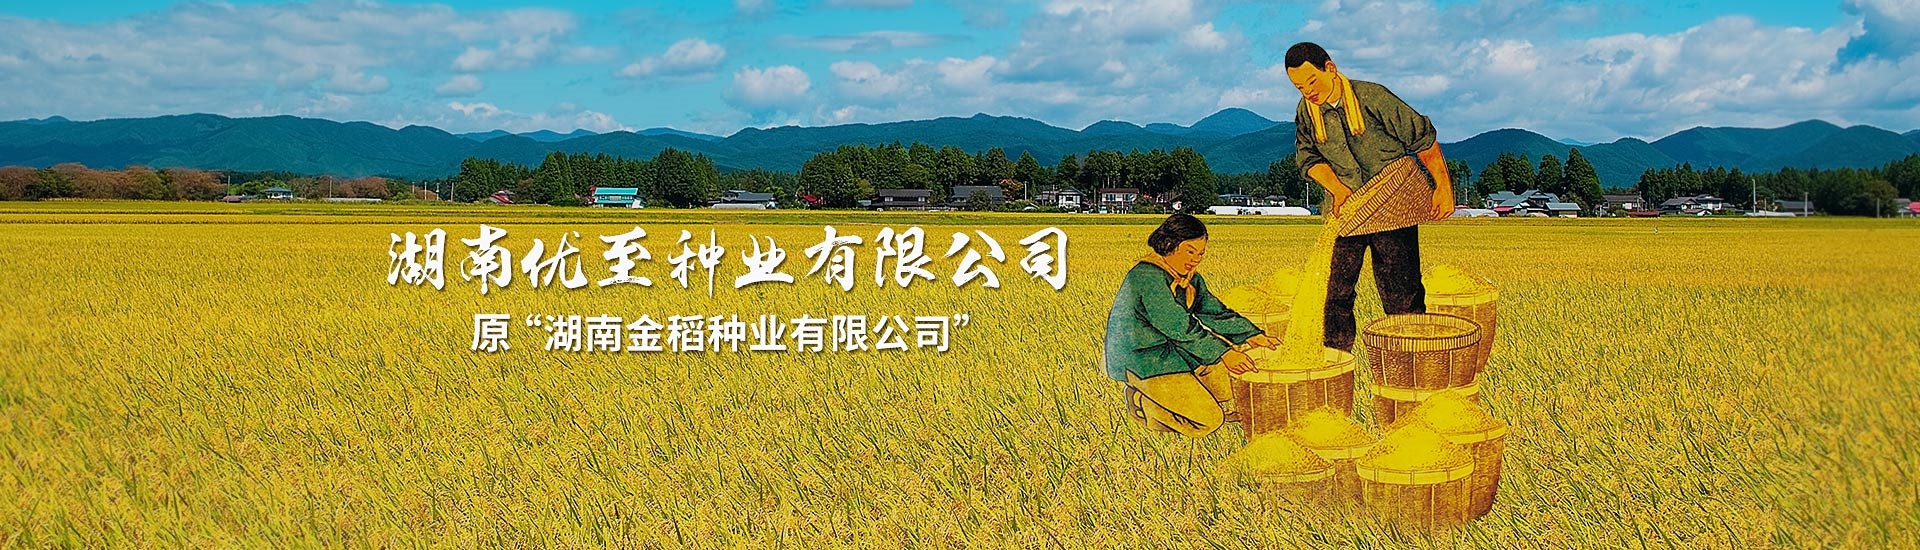 原“湖南金稻种业有限公司”更名为“37000cm威尼斯”